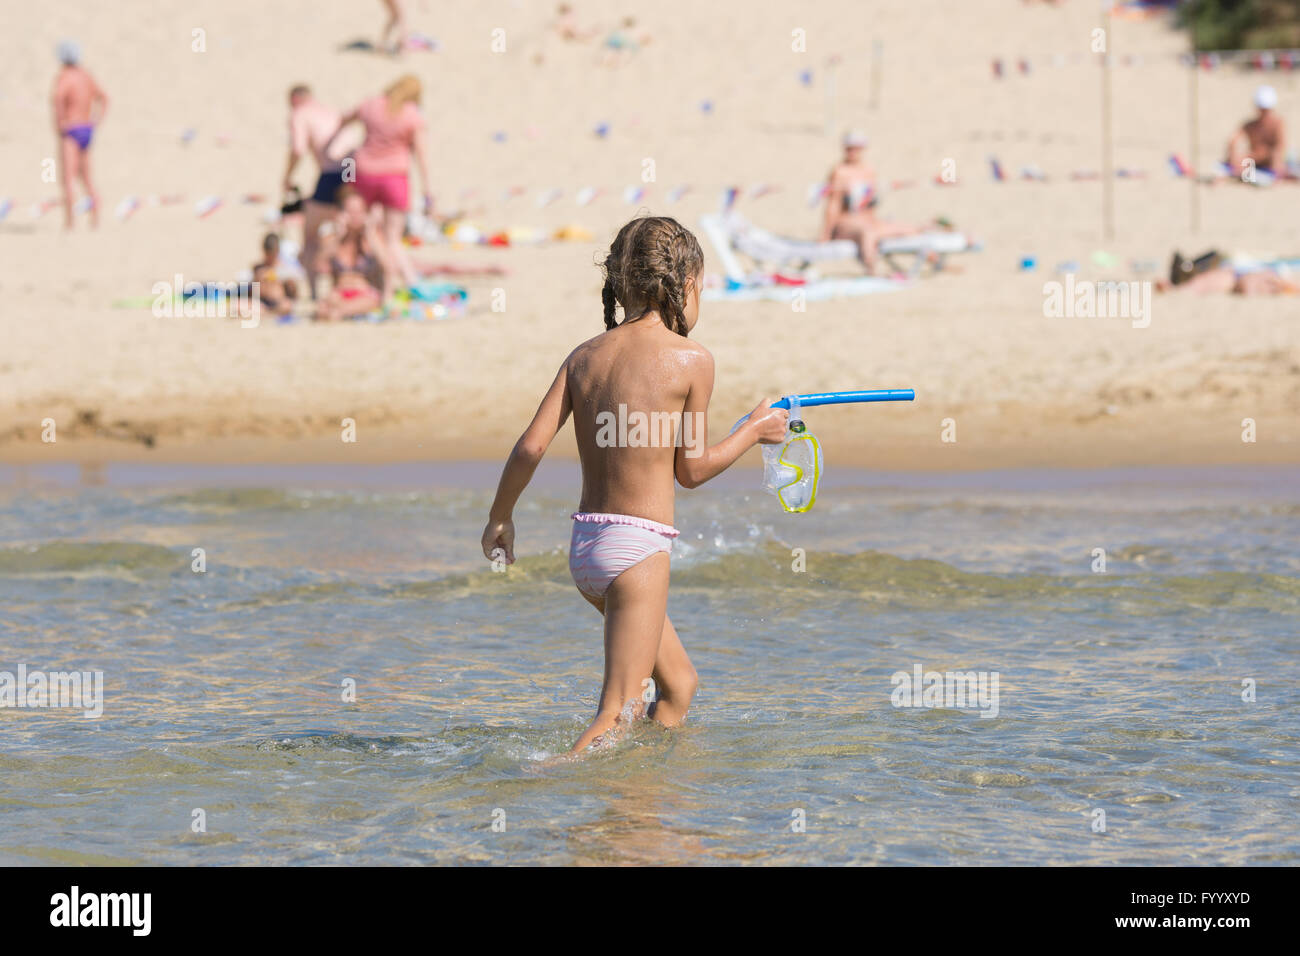 Chica fuera del agua mientras mantiene la máscara y un tubo de natación en sus manos Foto de stock